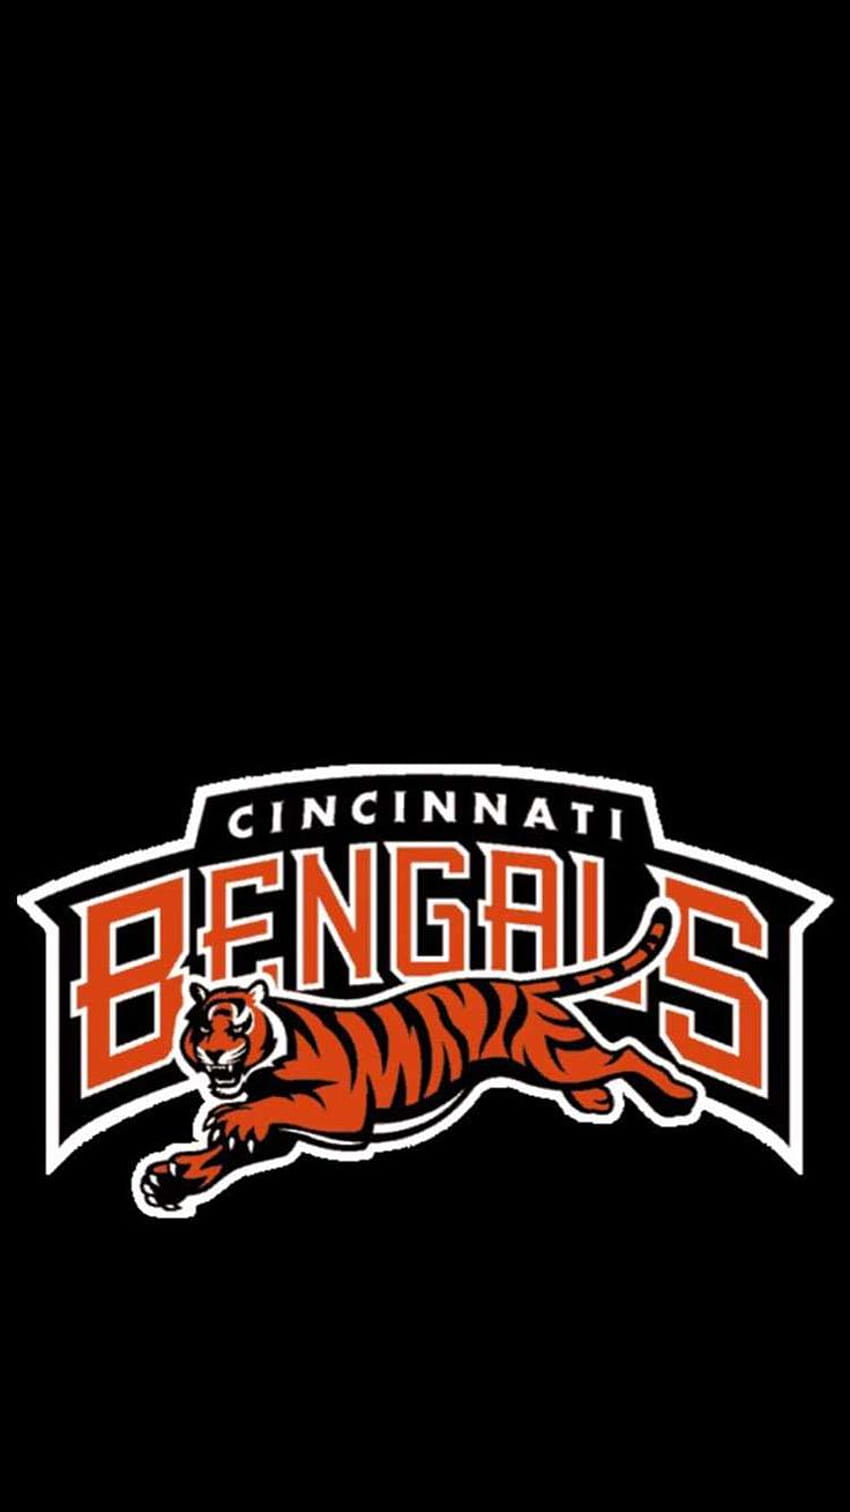 Cincinnati Bengals Descubre más Fútbol americano, Bengals, Cincinnati Bengals, Fútbol, ​​NFL . https… en 2022, Cincinnati Bengals 2022 fondo de pantalla del teléfono